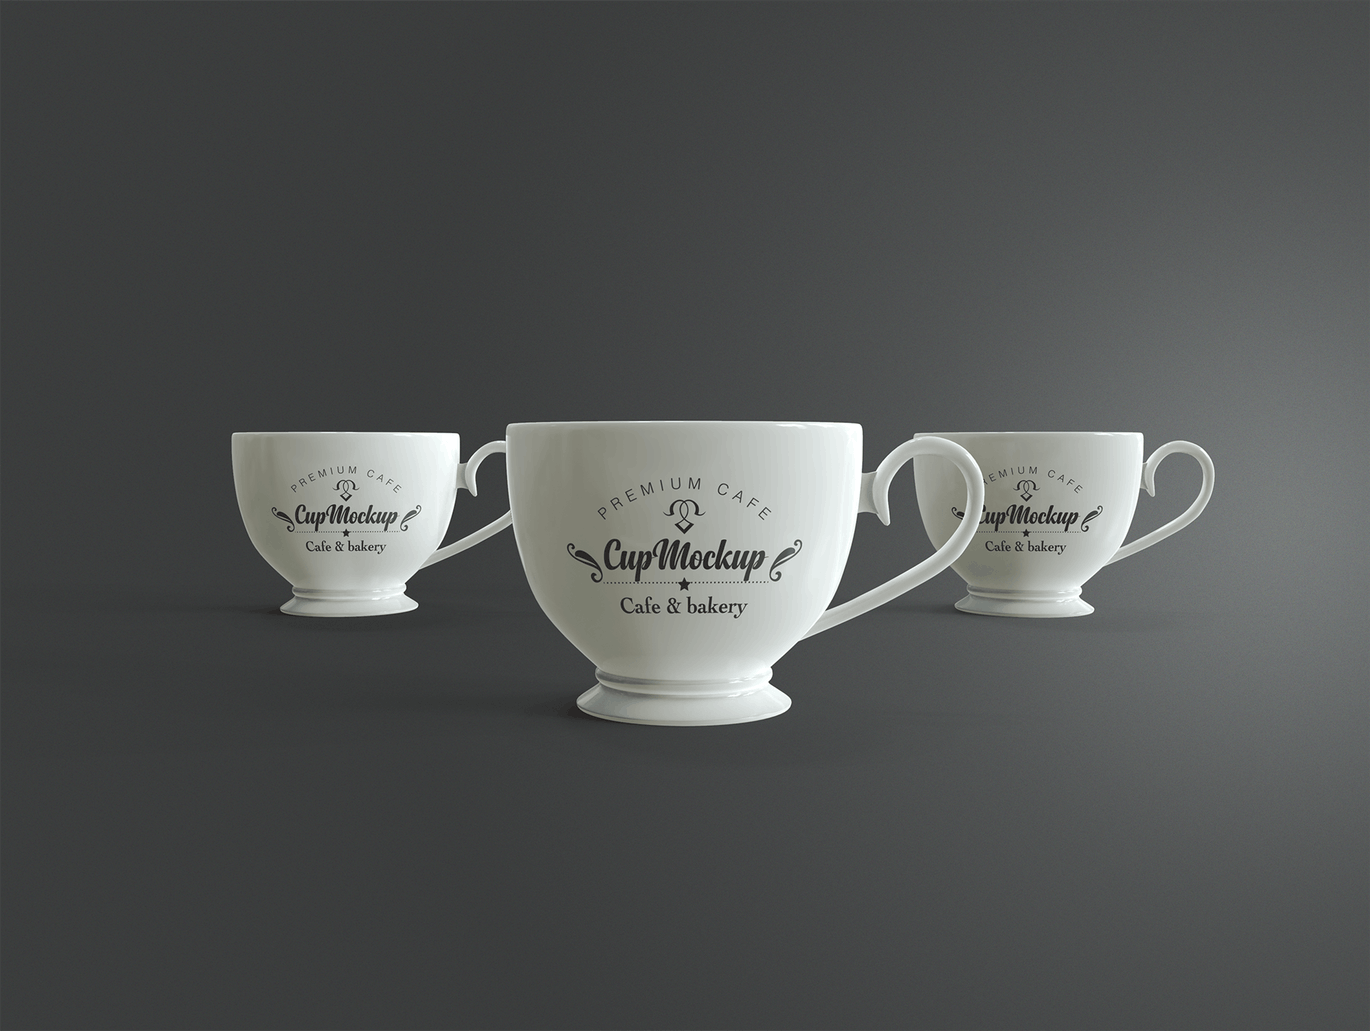 陶瓷茶杯咖啡杯外观设计样机模板v2 Cup Mockup 2.0插图(8)